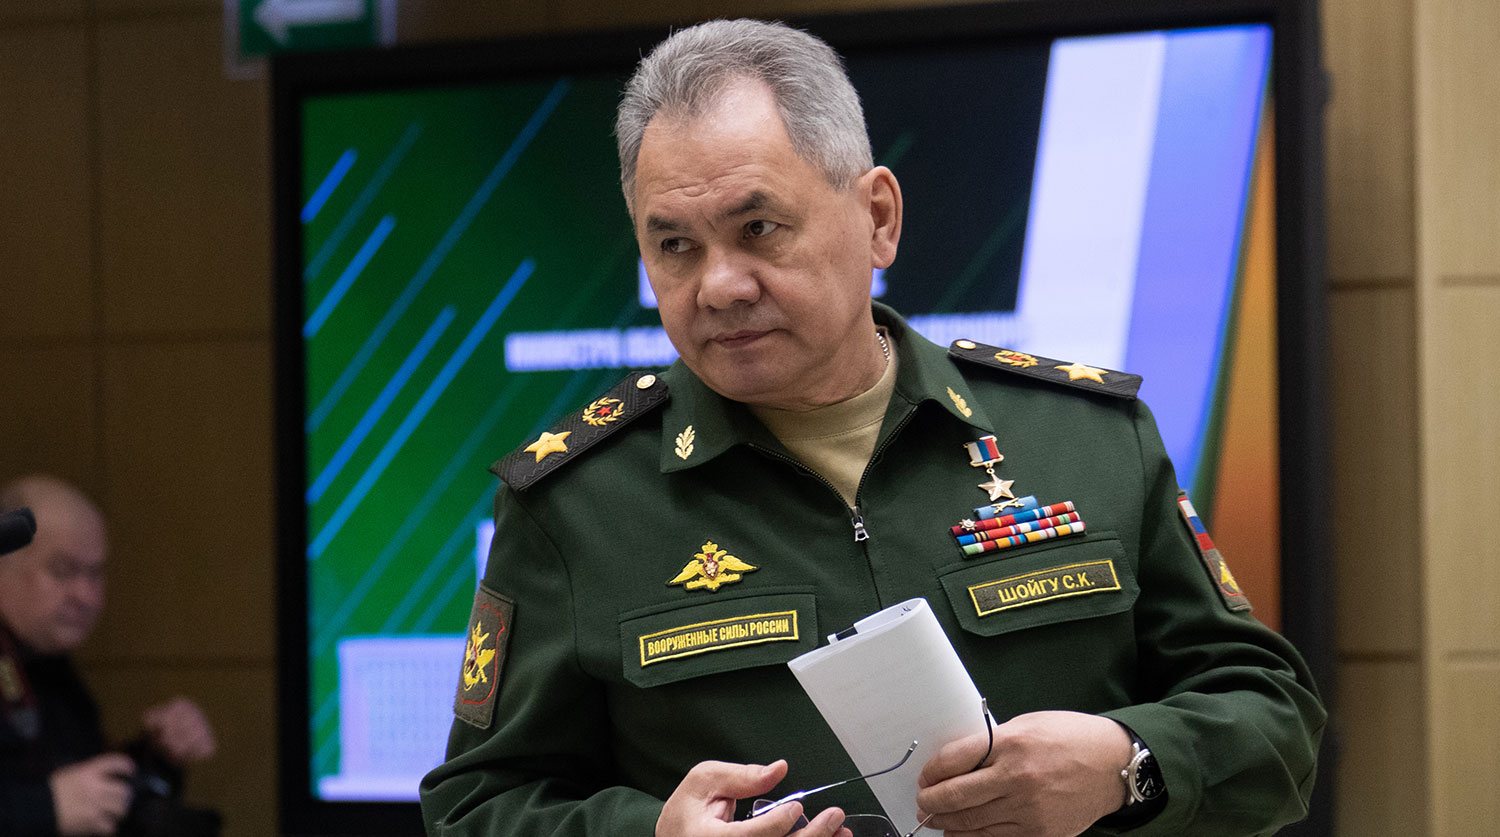 Шойгу заявил о возросшей активности НАТО у южных границ России